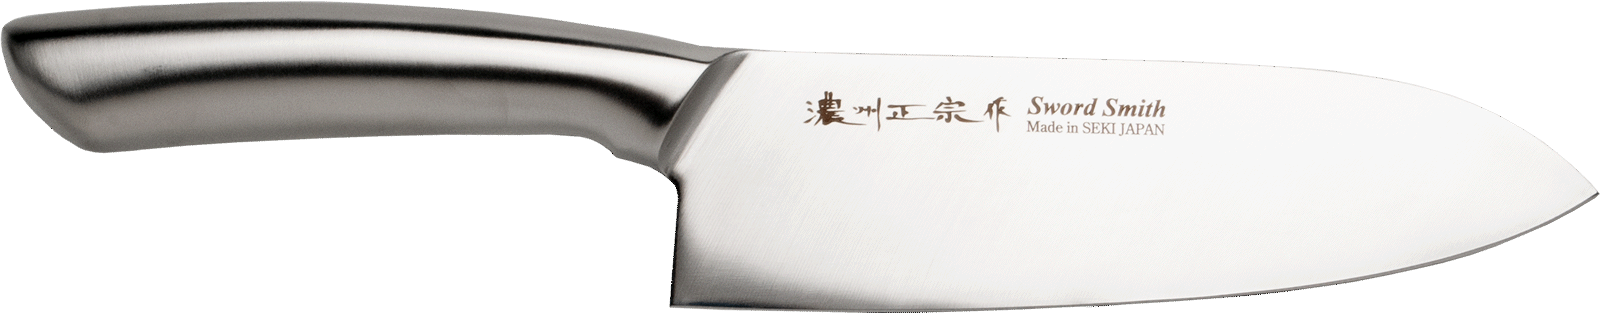 Santoku-Messer Japanisches Messer, Satake 0